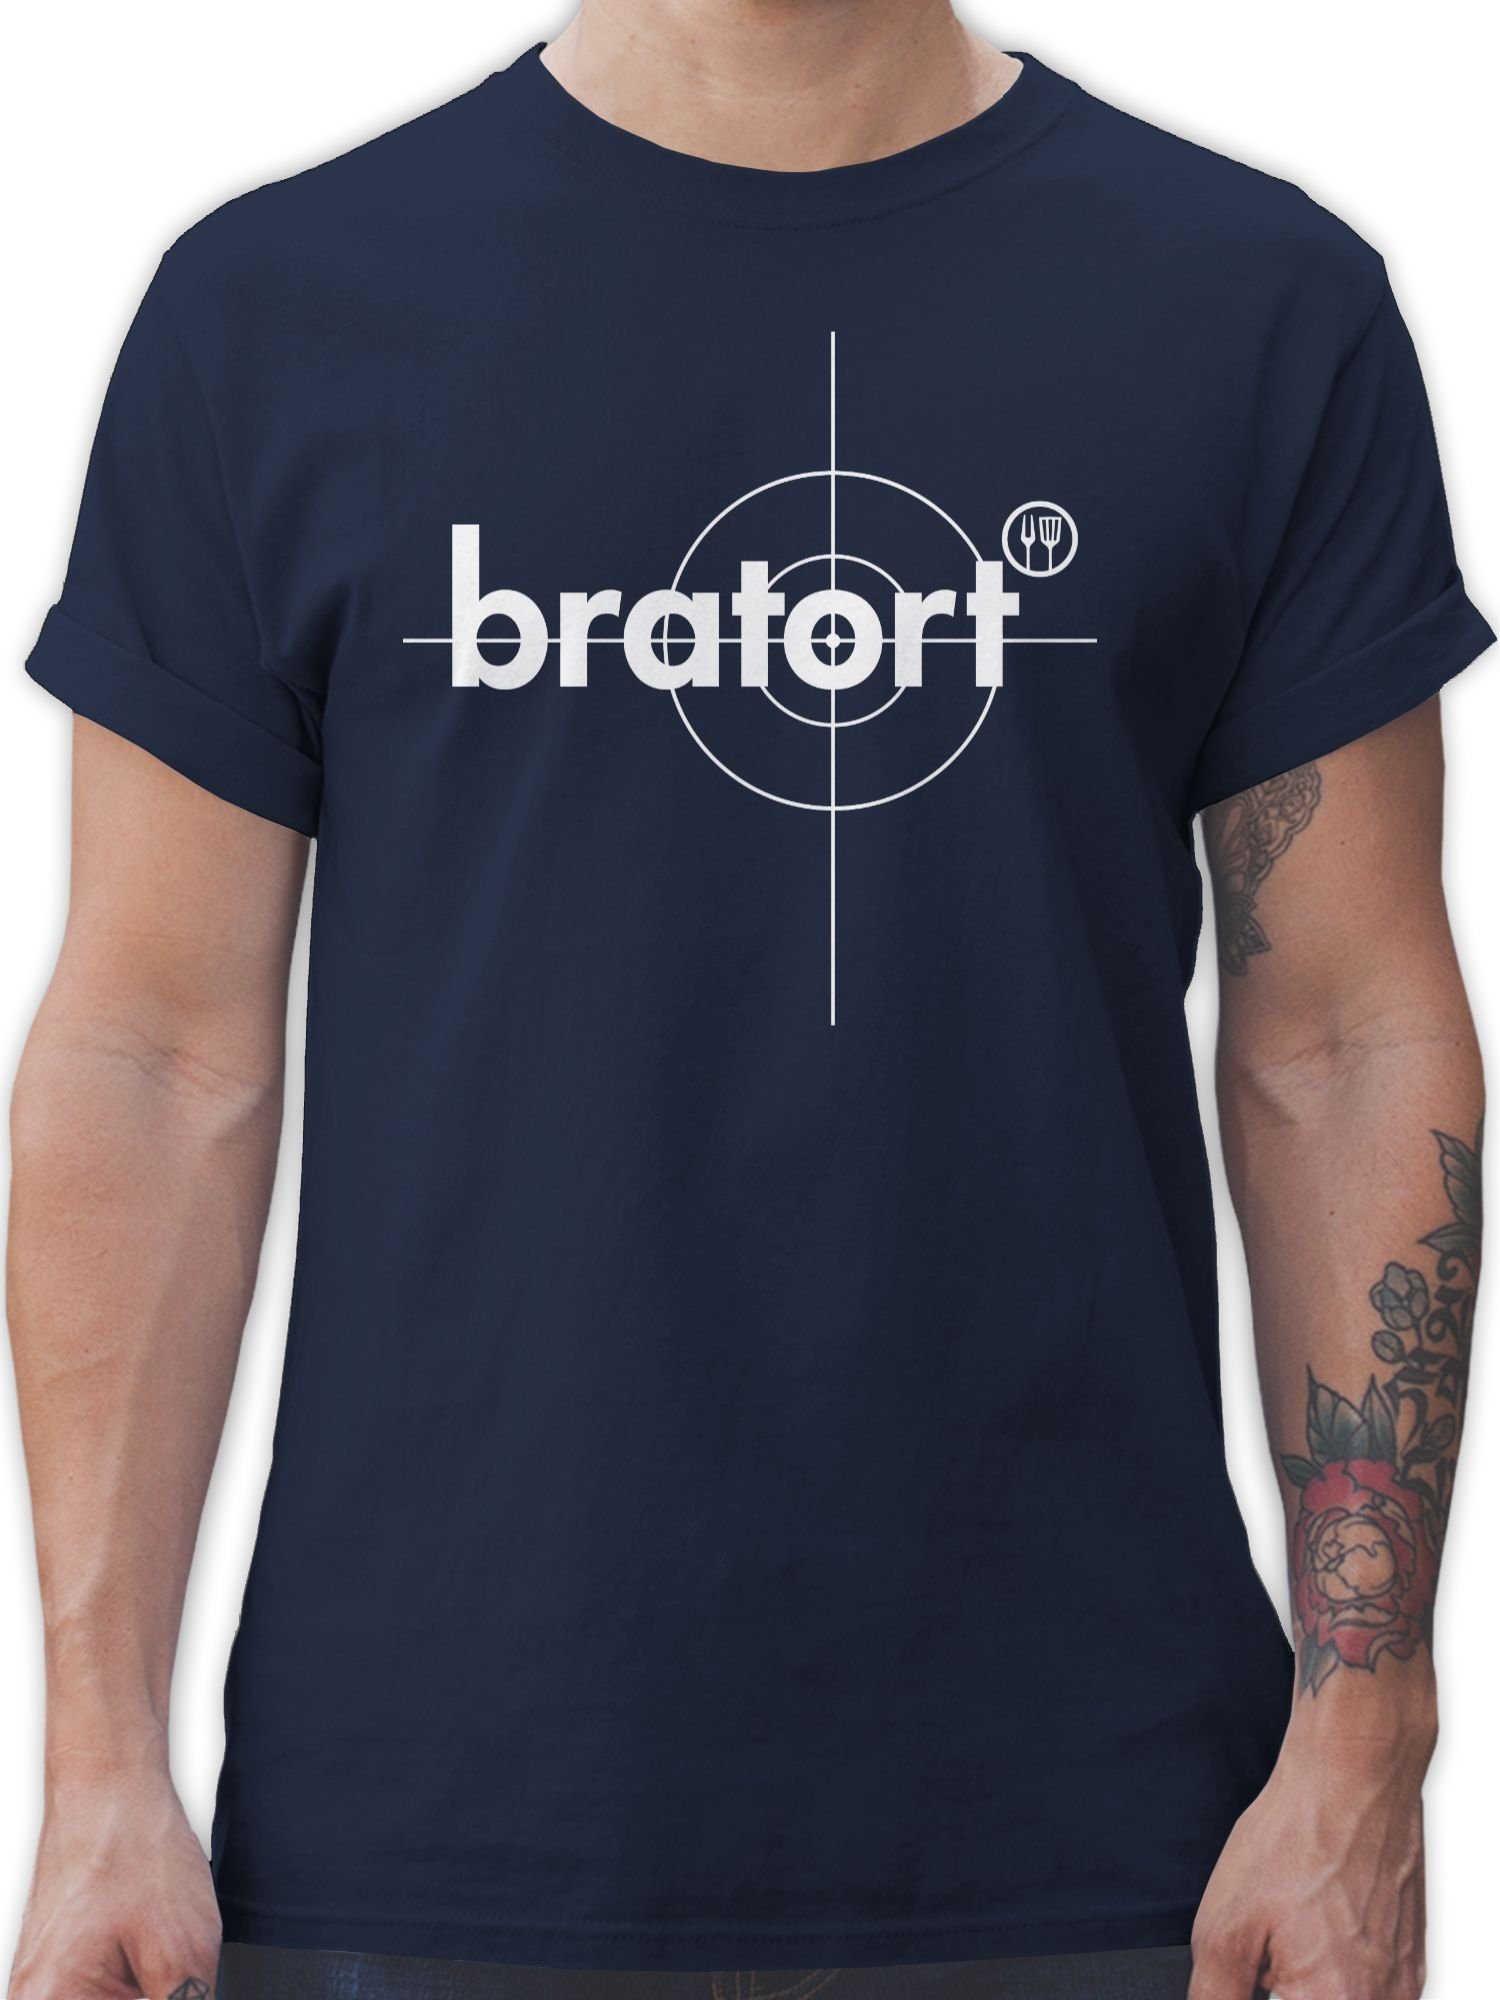 Shirtracer T-Shirt Bratort Grillmeister Grill Grillzubehör & Grillen Geschenk 02 Navy Blau